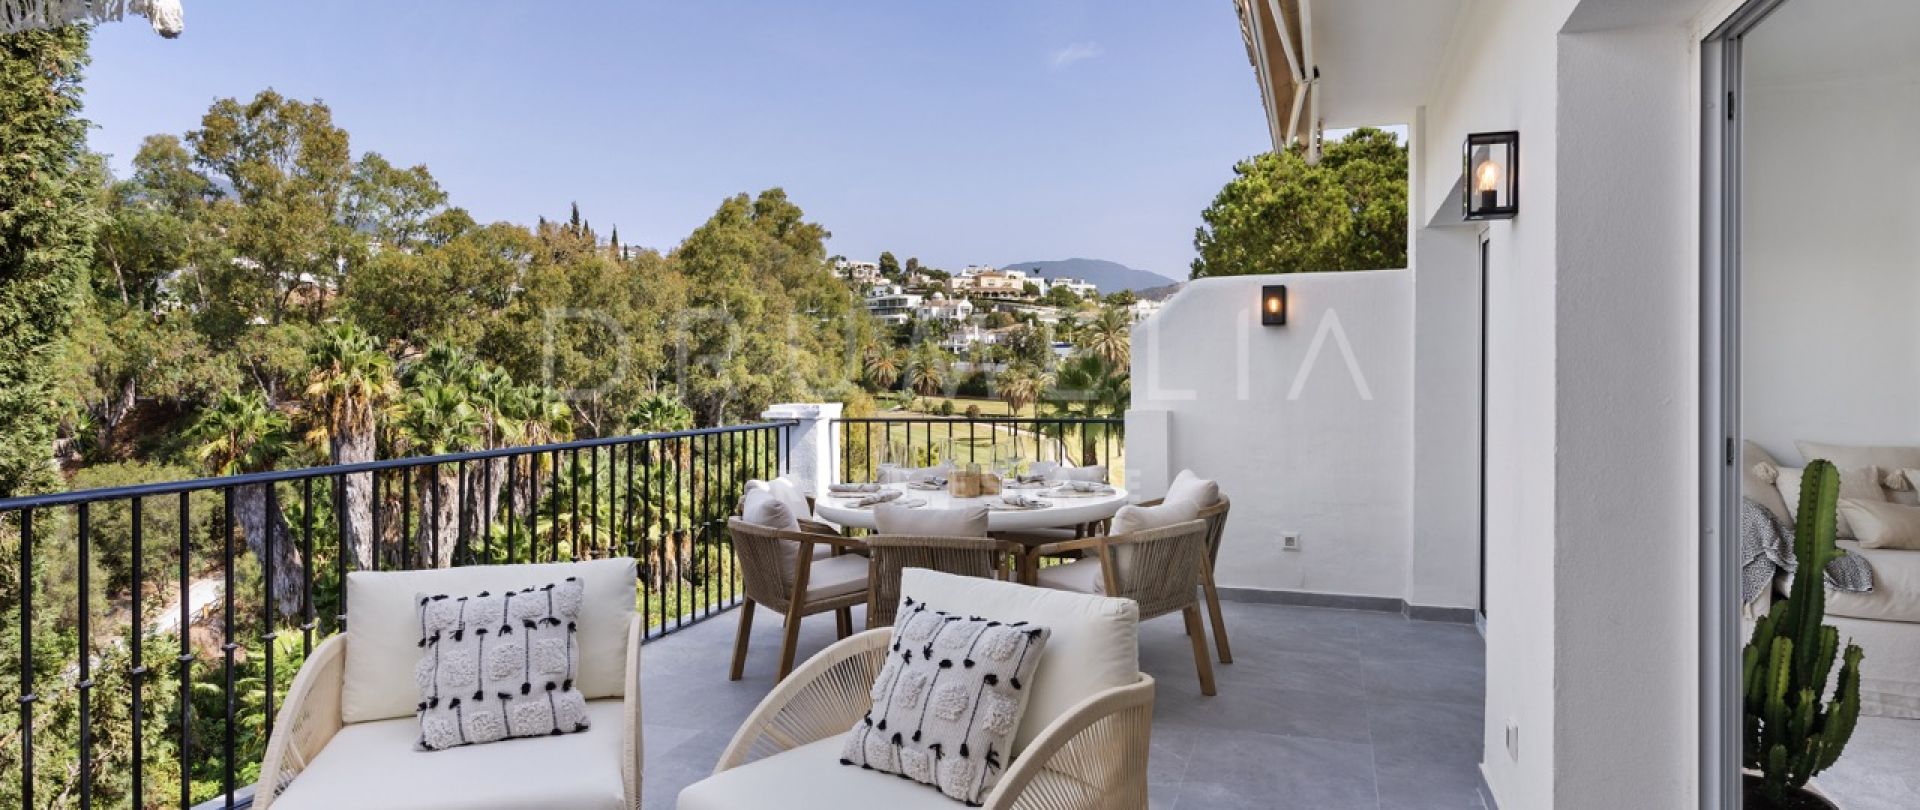 Eerstelijns golf modern elegant townhouse met boho vibe, berg- en golfzicht, La Quinta,Benahavis